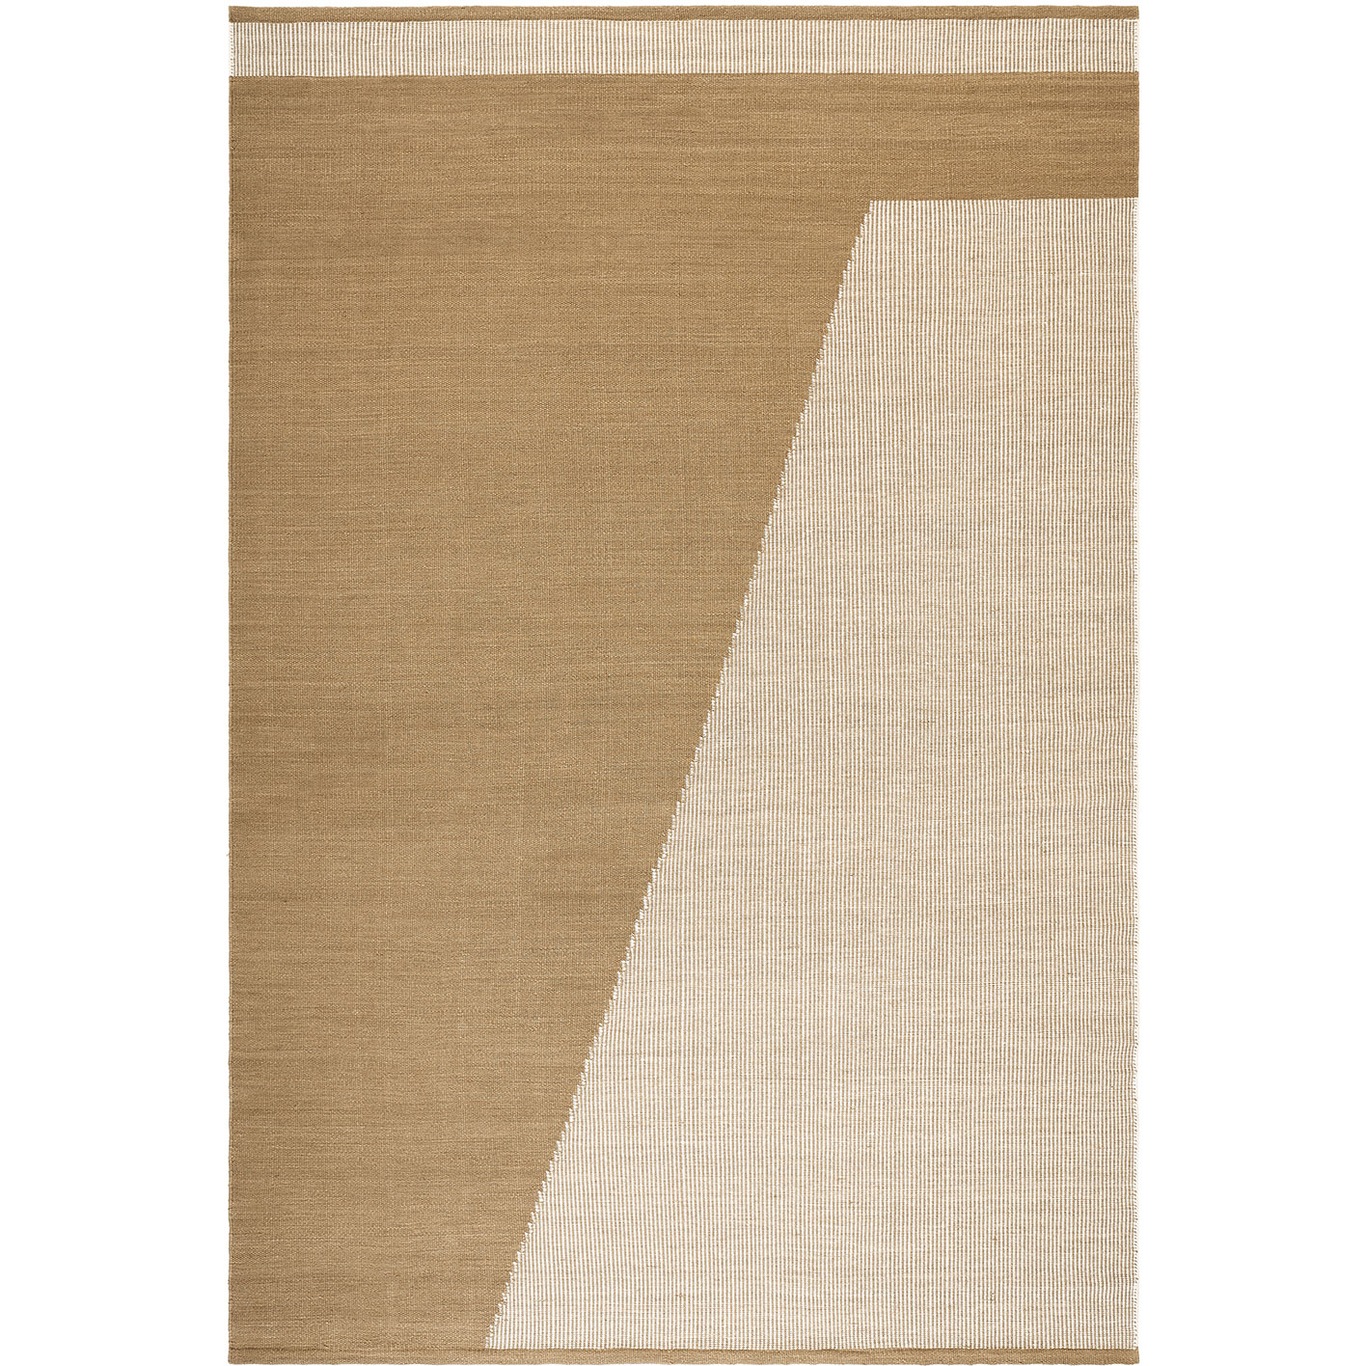 Una Traceable Teppich Beige / Off White / Beige, 180x270 cm